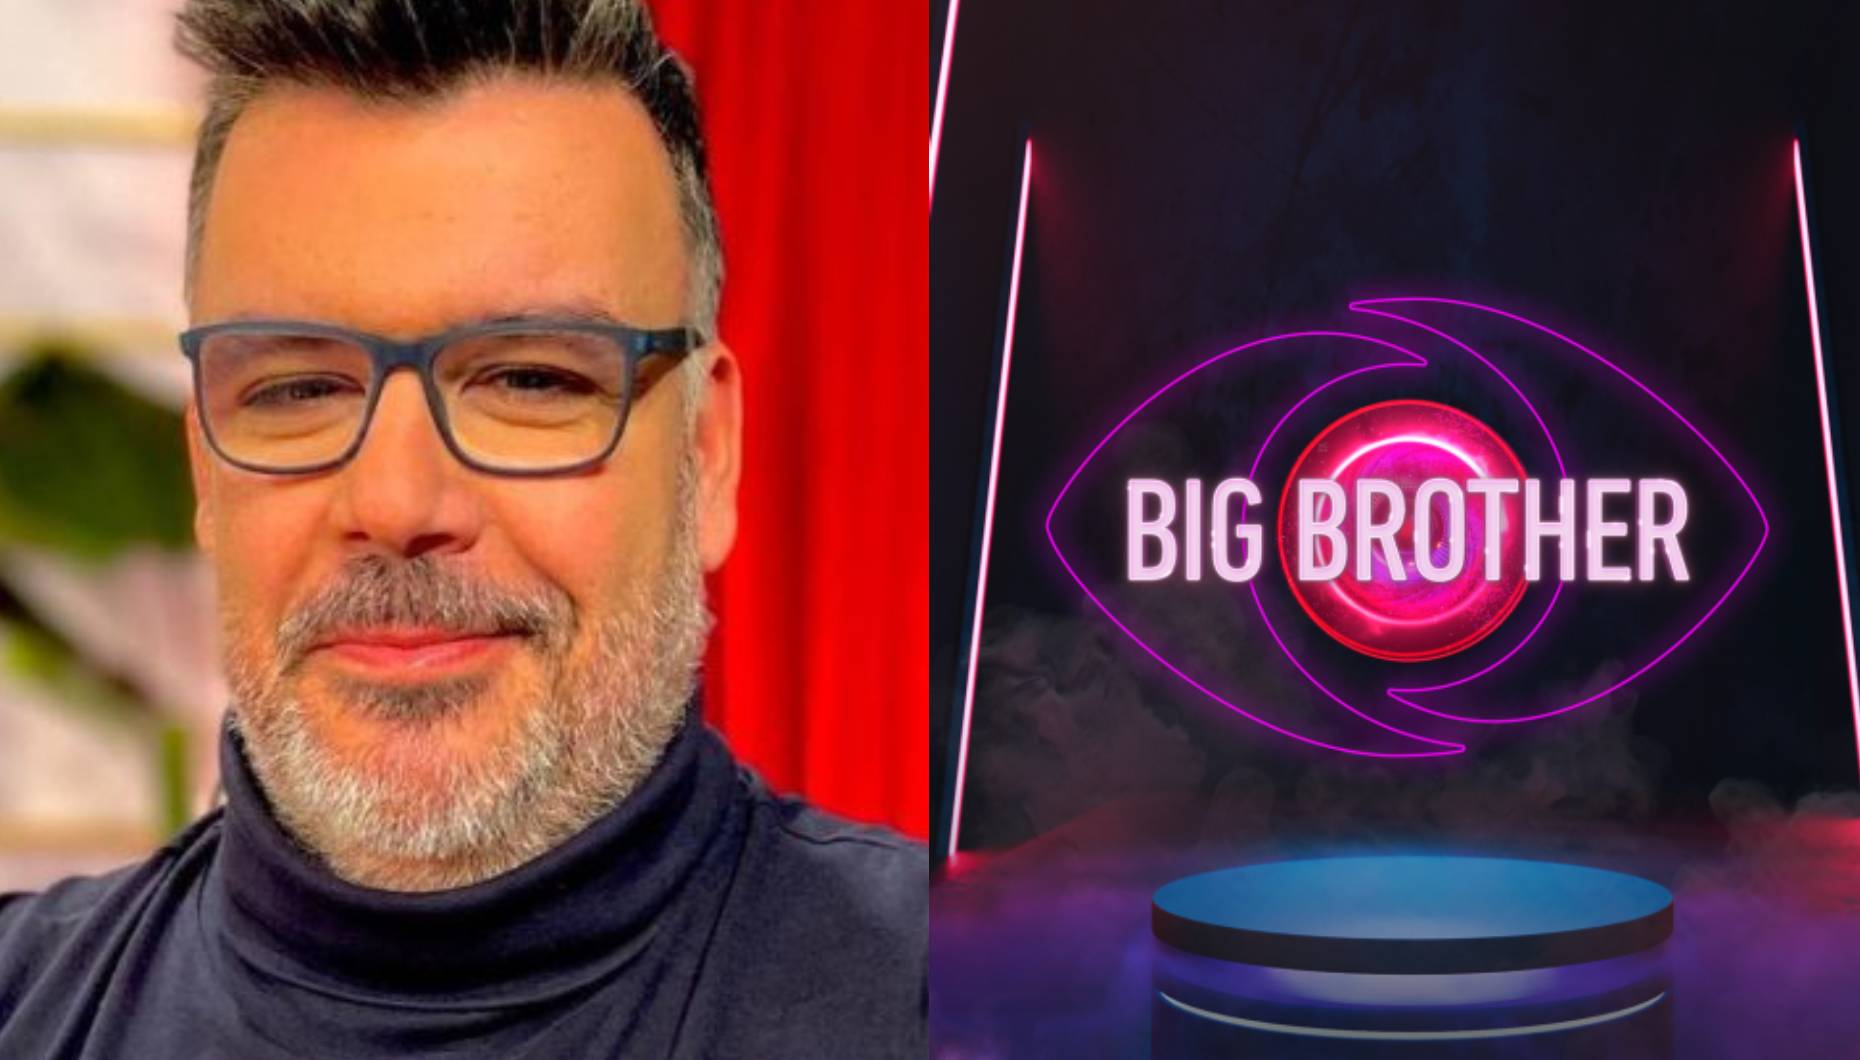 "Excesso de Big Brother": Nuno Azinheira comenta estratégia da TVI e elogia Cláudio Ramos